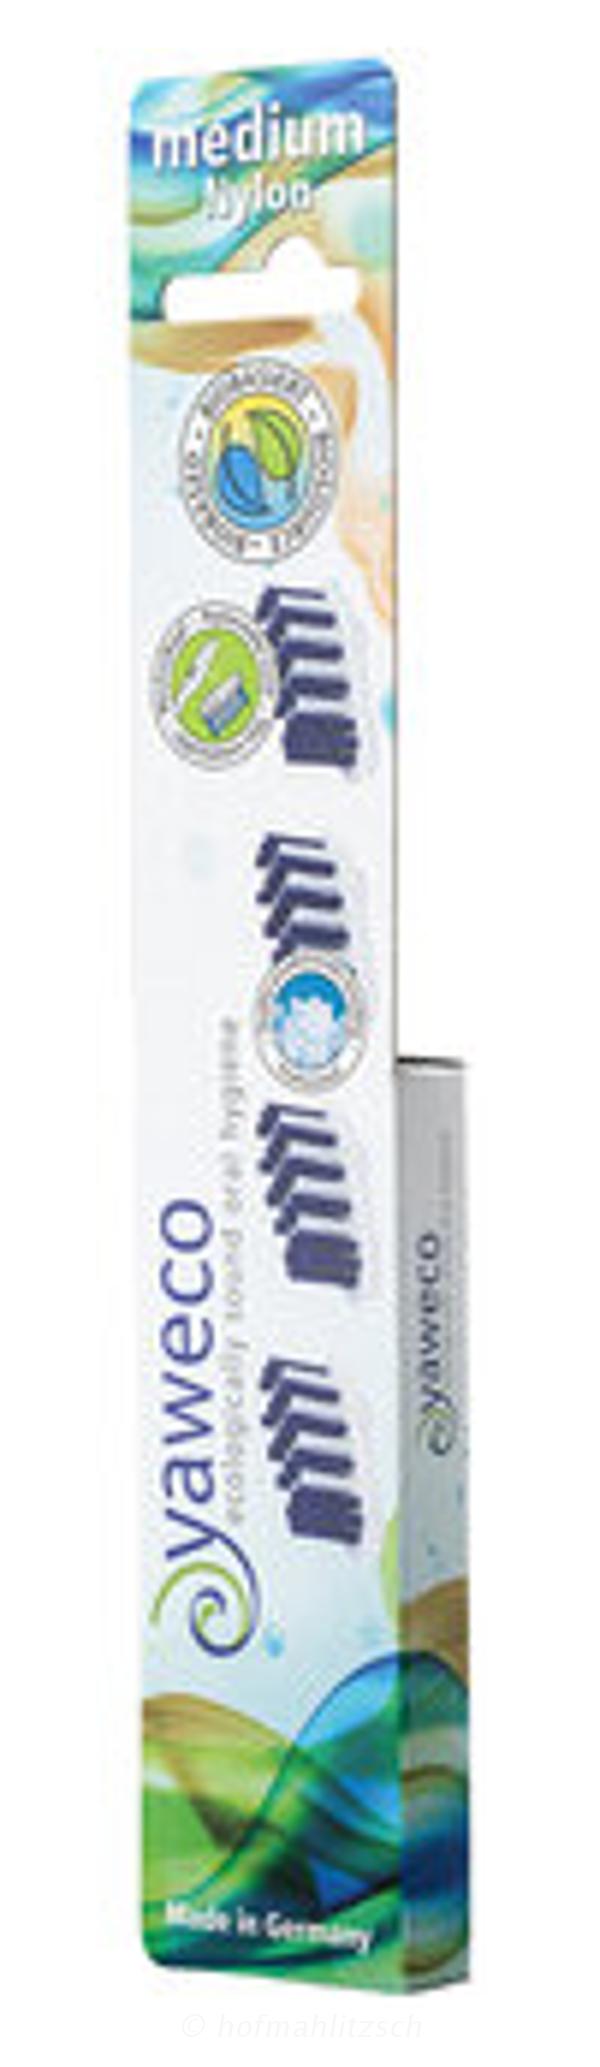 Produktfoto zu Yaweco Wechselköpfe für Zahnbürste